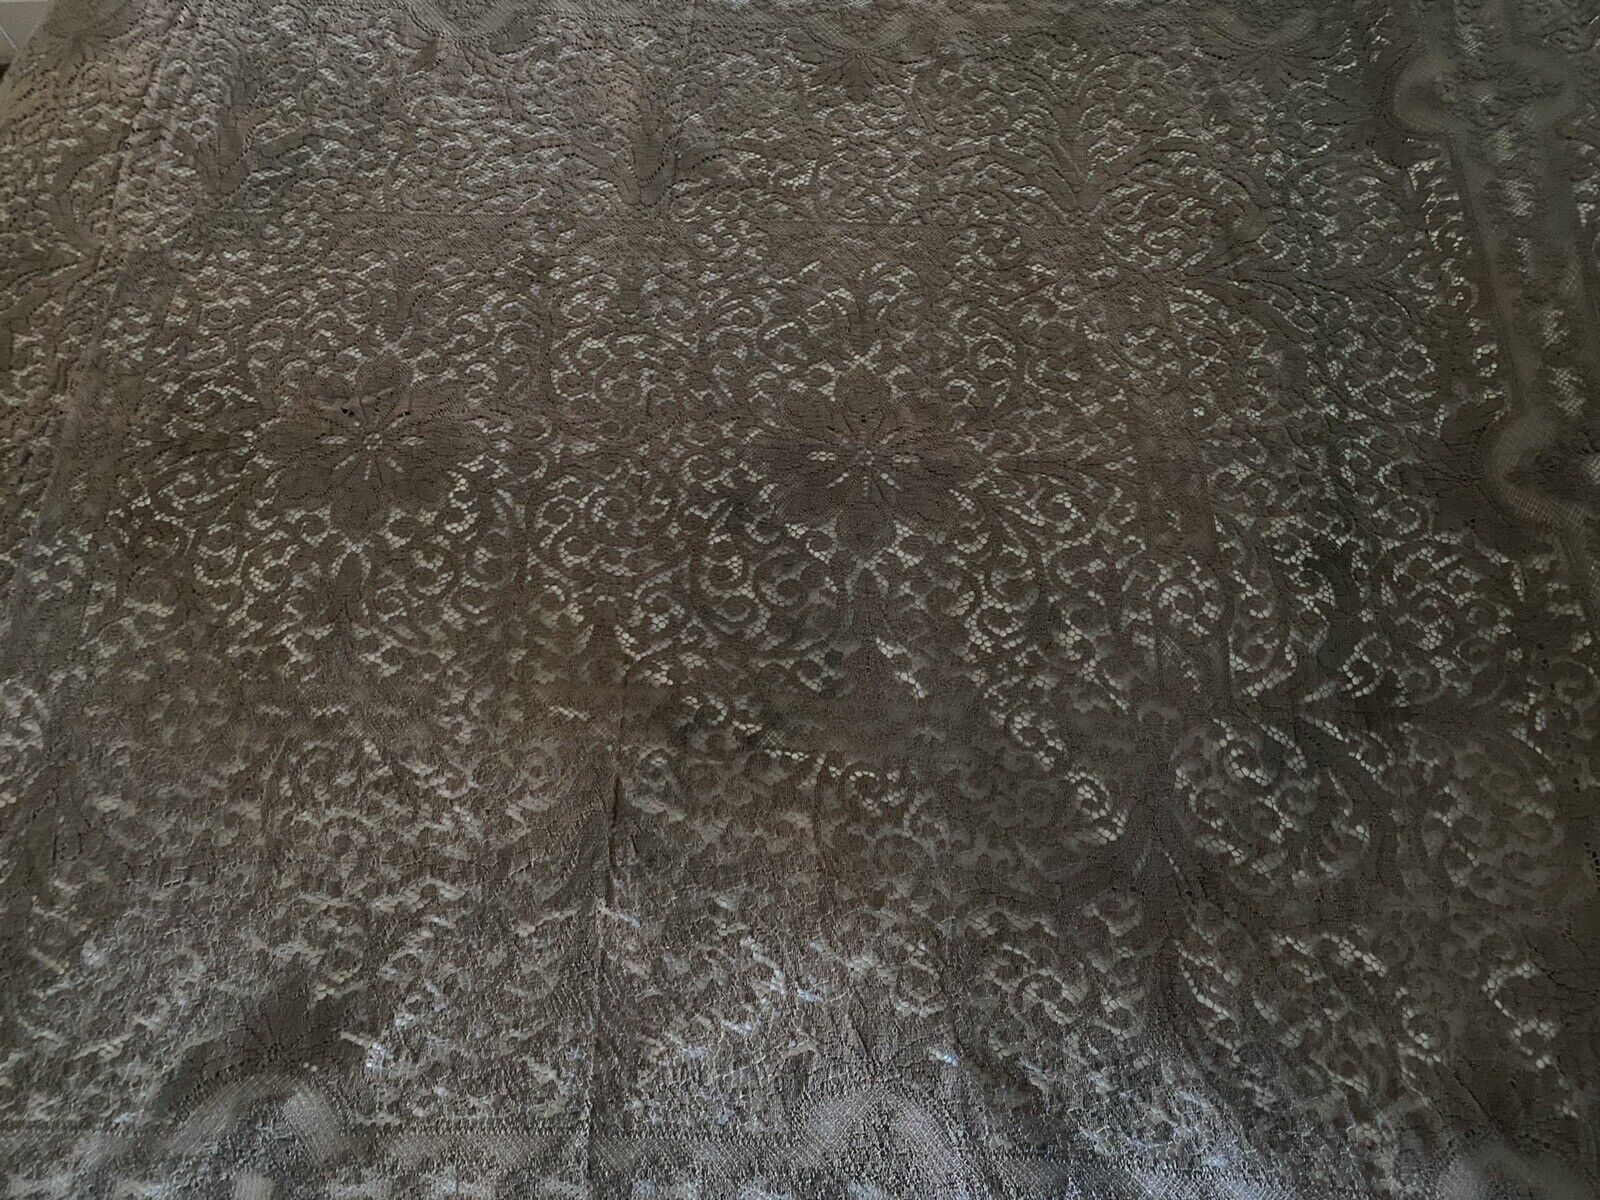 Vintage Lace Tablecloth Mocha Brown 60” W X 90” L Cotton Blend Rectangle EUC